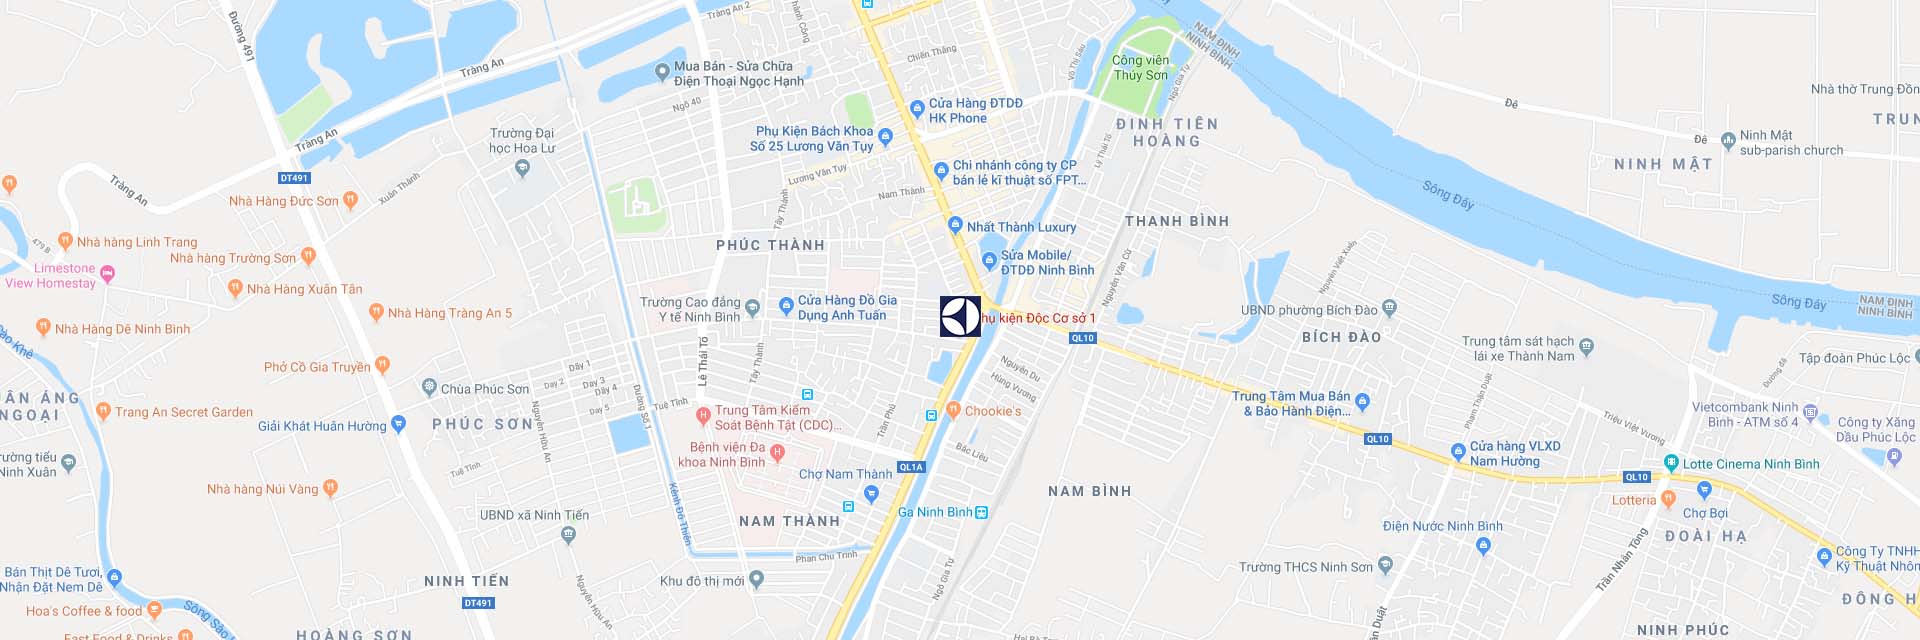 Google Maps trung tâm bảo hành Electrolux tại Ninh Bình